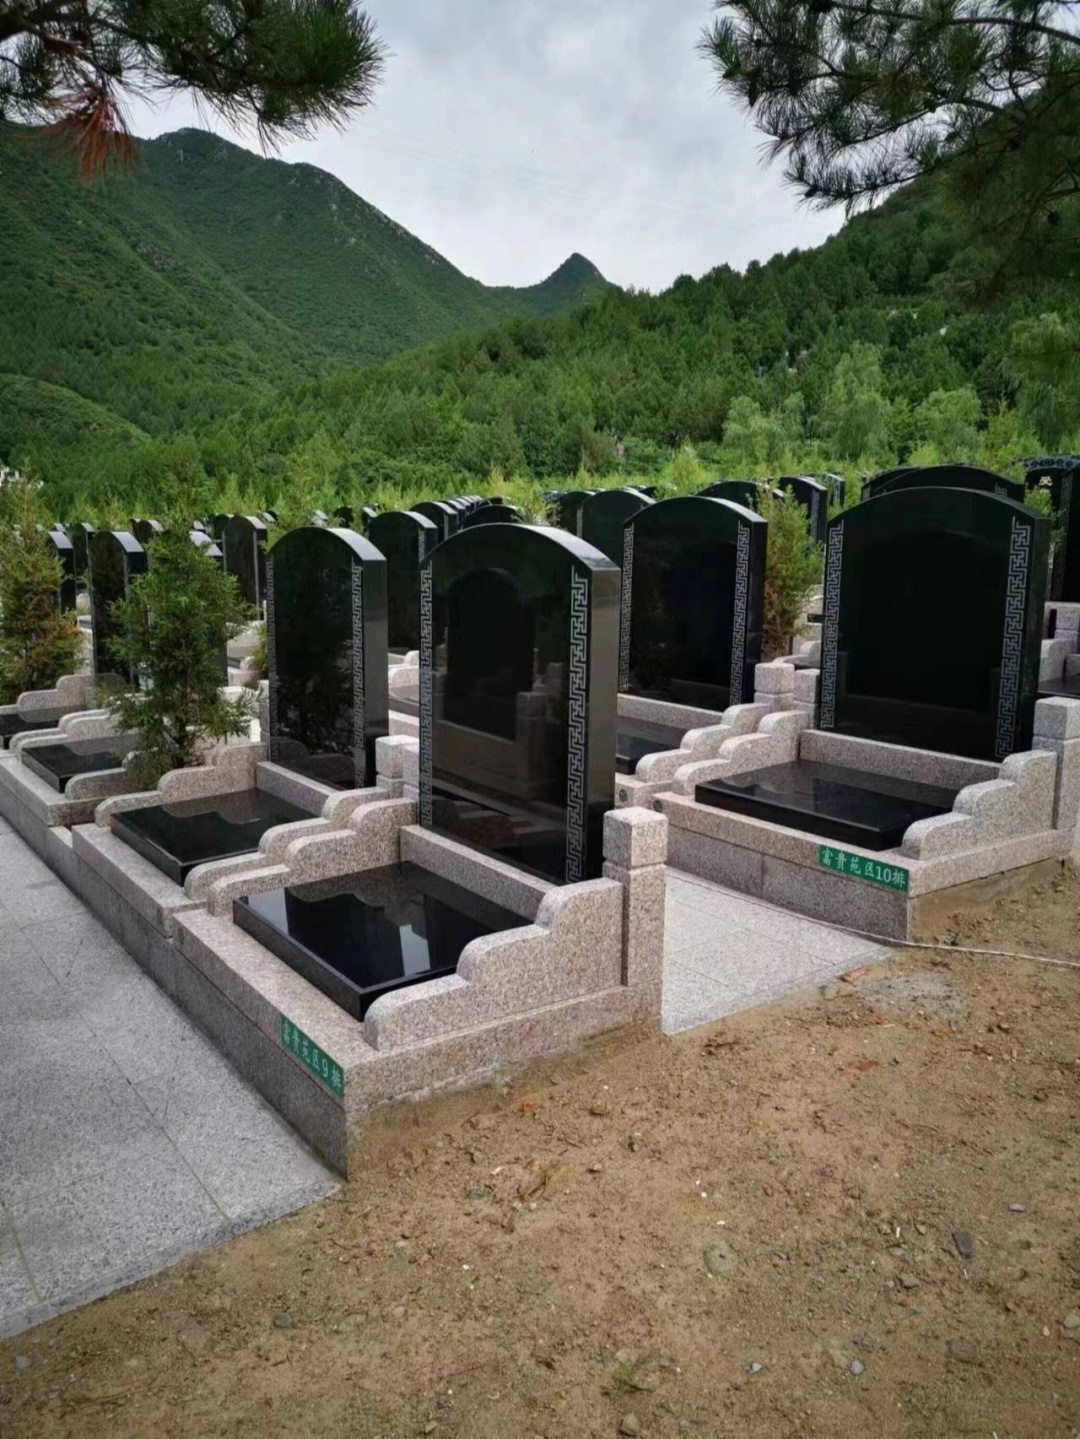 景仰园是1999年由北京市民政局批准成立的合法大型永久植树葬陵园,距